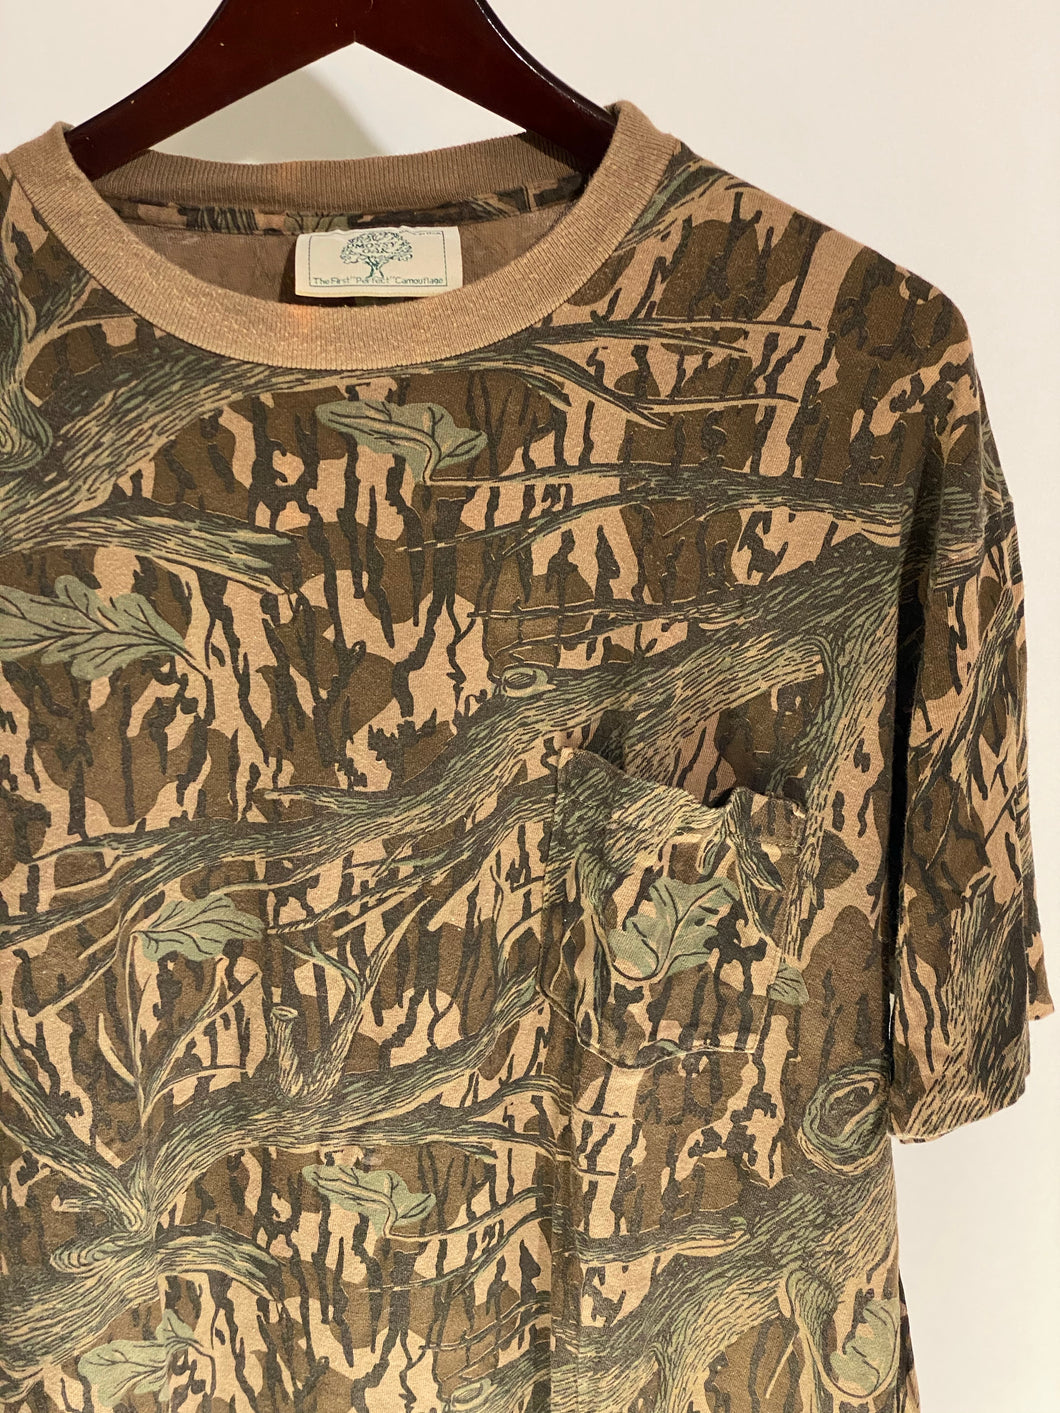 Mossy Oak Treestand Shirt (L/XL)